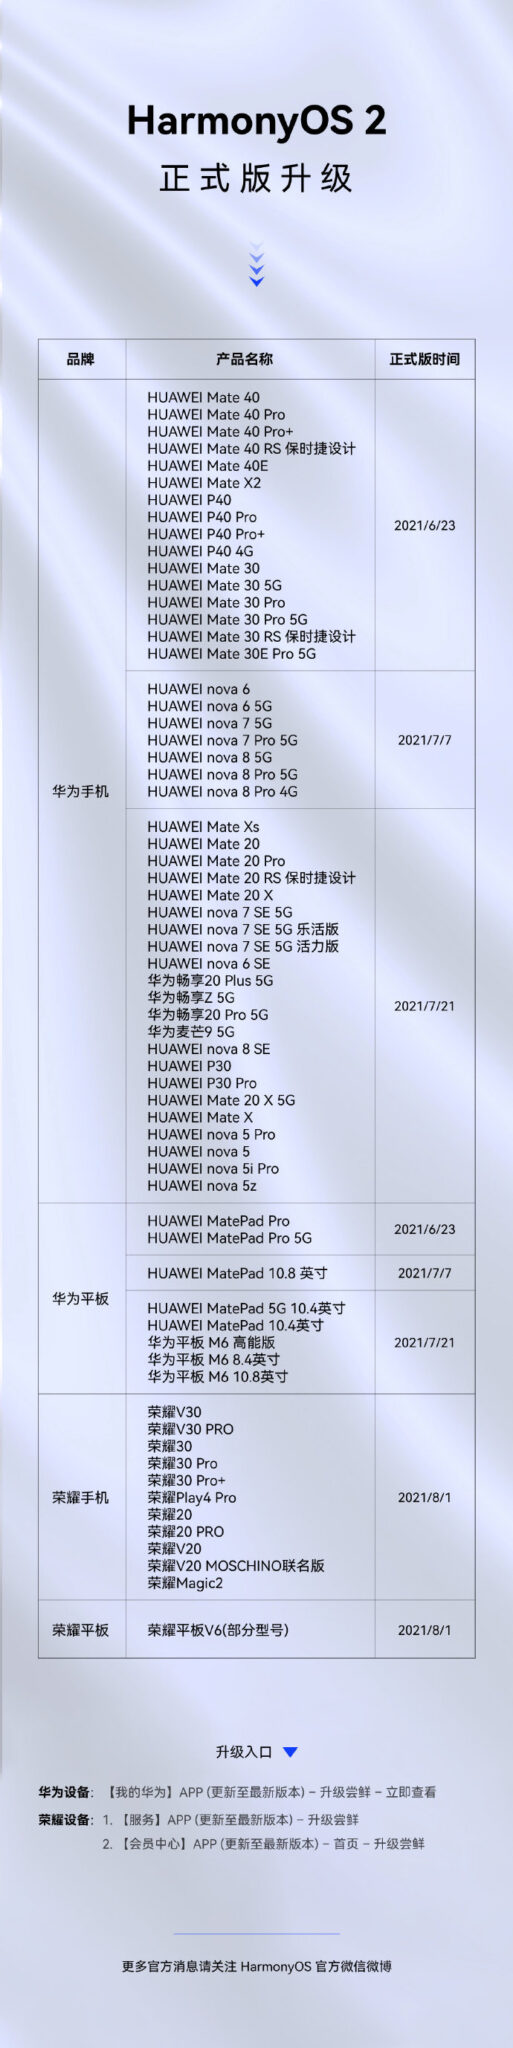 65 пристроїв Huawei і Honor вже отримали стабільну HarmonyOS 2.0 - офіційний список